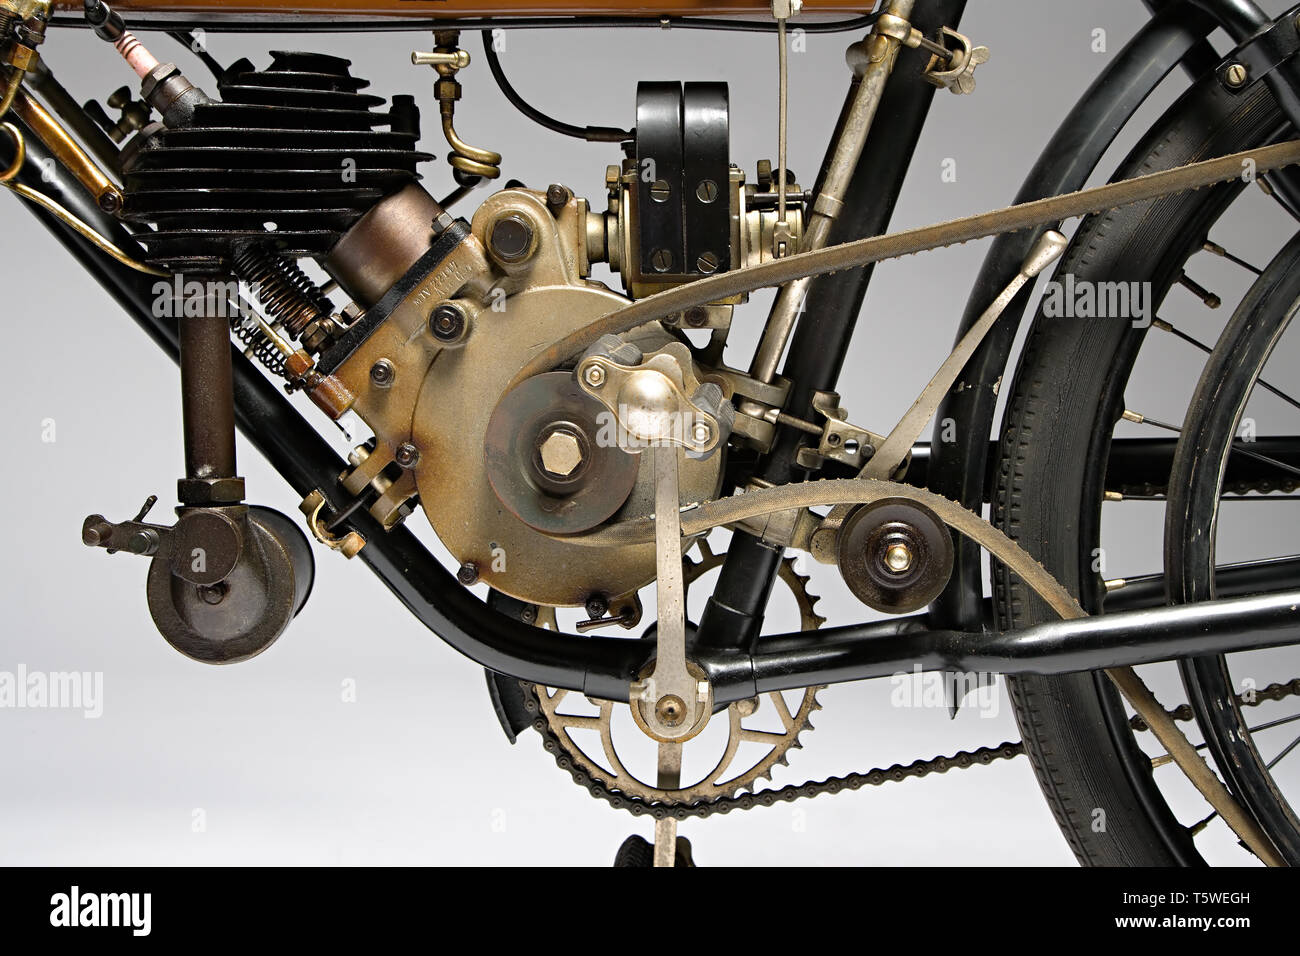 Moto d'epoca Motosacoche M5  Marca: Motosacoche modello: M5 nazione: Svizzera - Ginevra anno: 1910 condizioni: conservata cilindrata:  Stock Photo